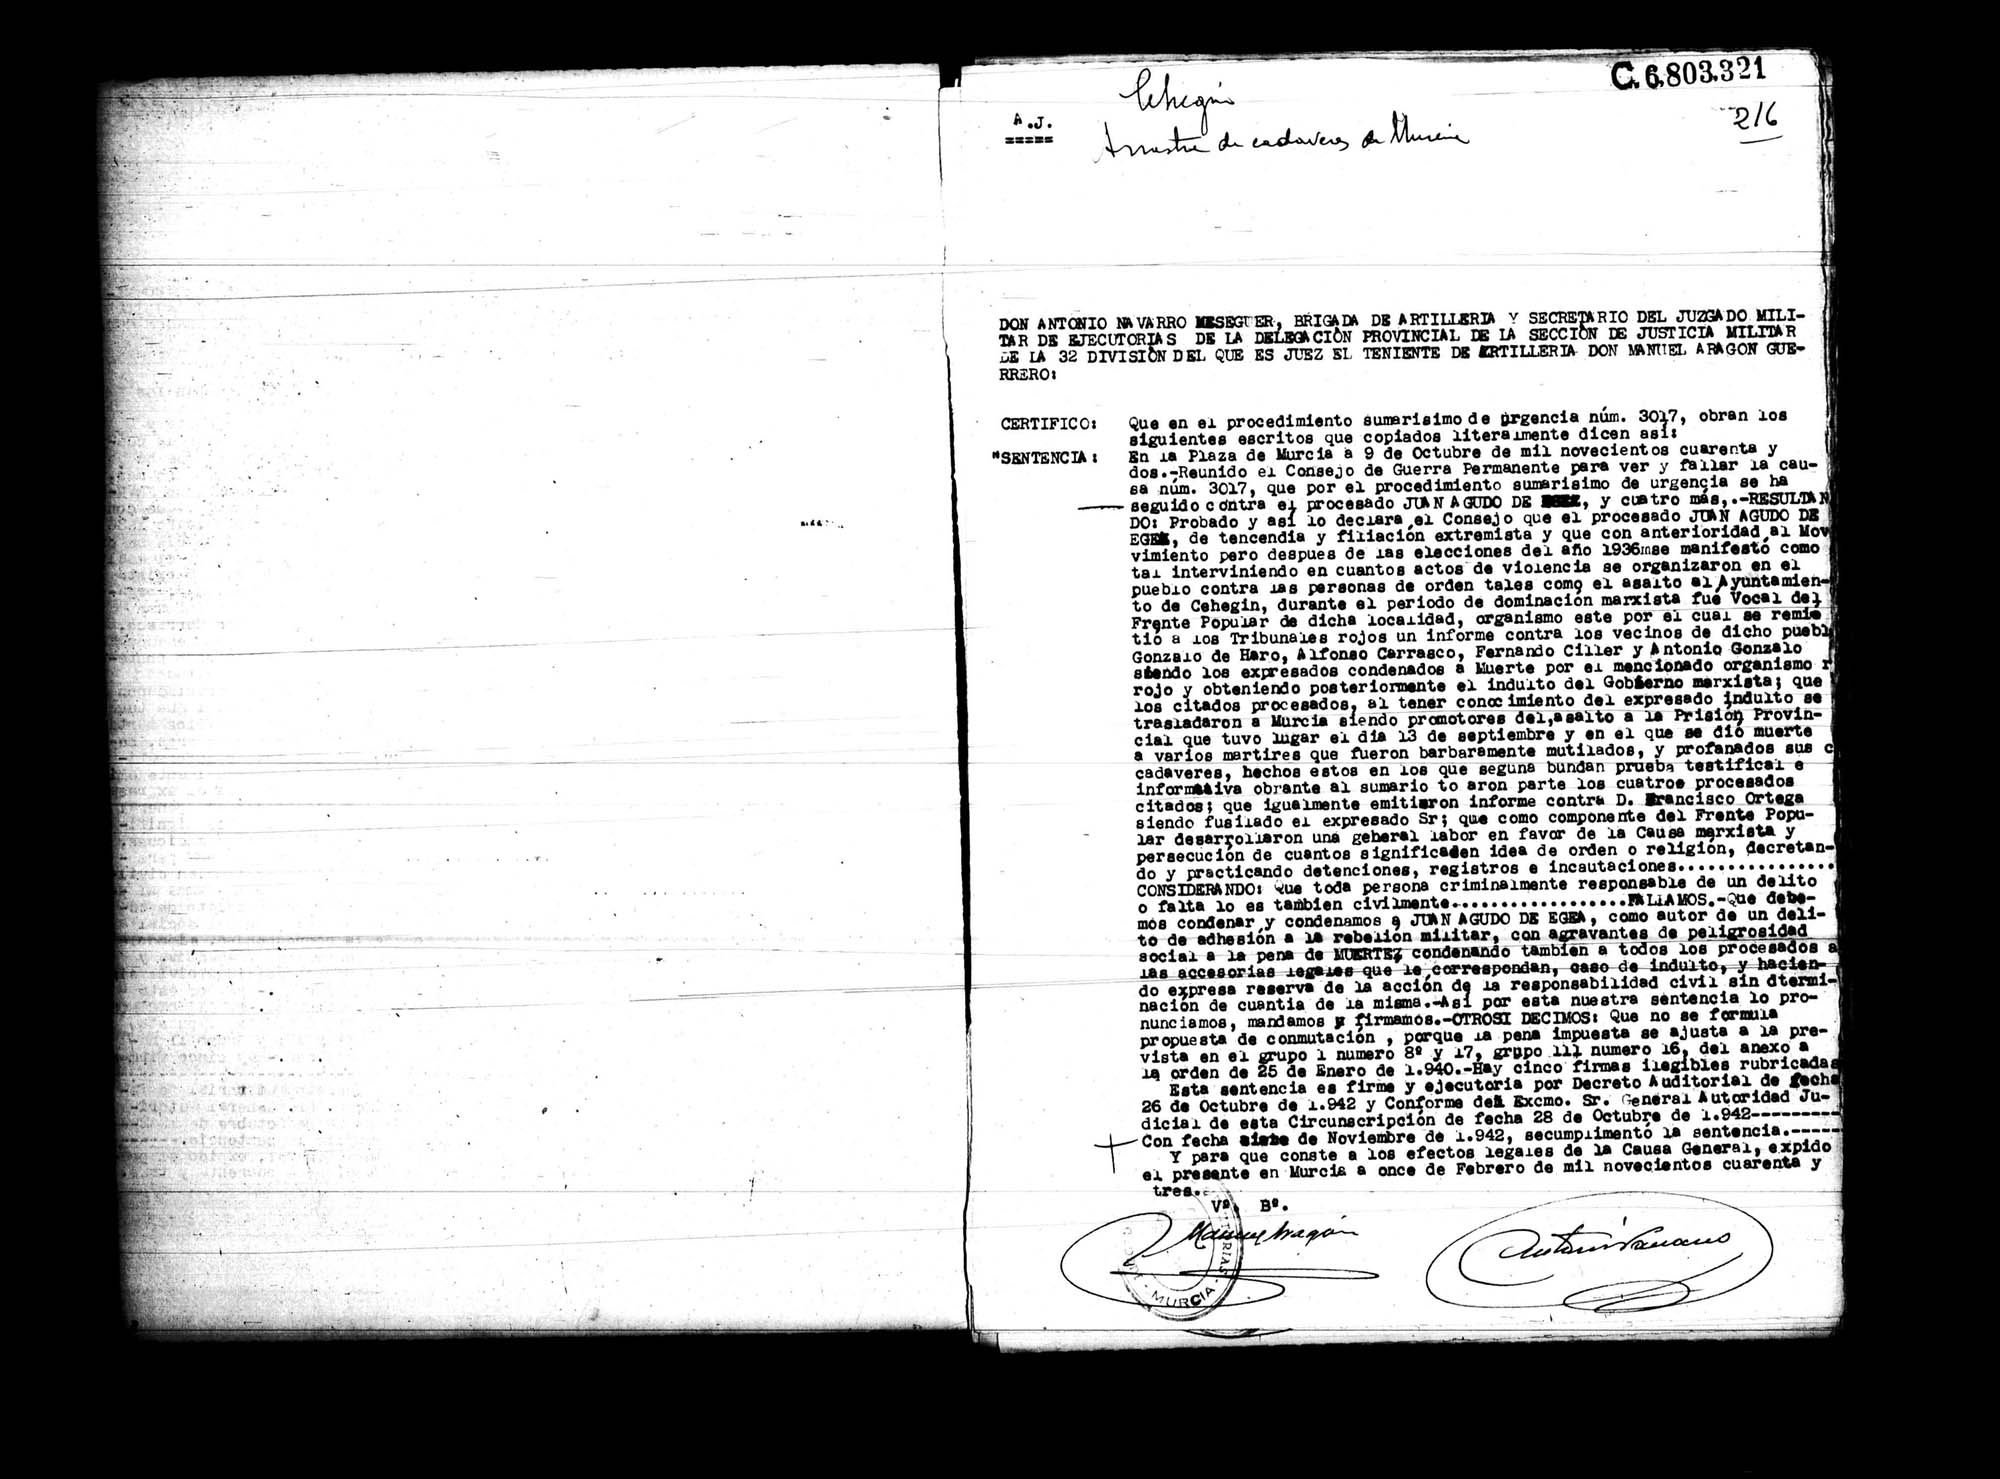 Certificado de la sentencia pronunciada contra Juan Aguado de Egea, causa 3017, el 9 de octubre de 1942 en Murcia.